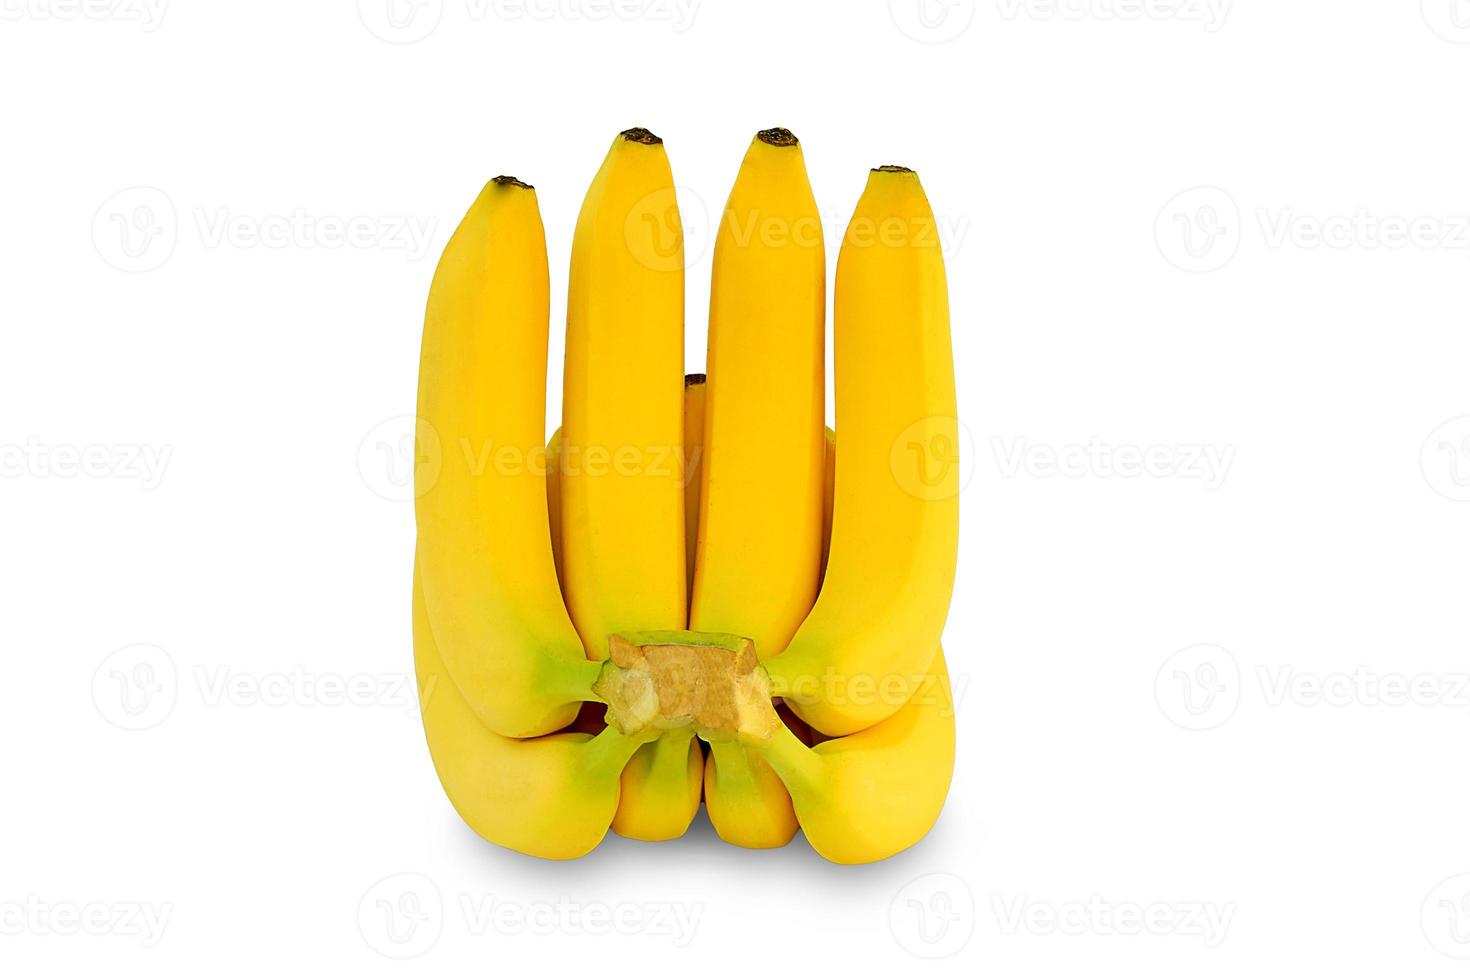 tas de bananes isolé sur fond blanc photo